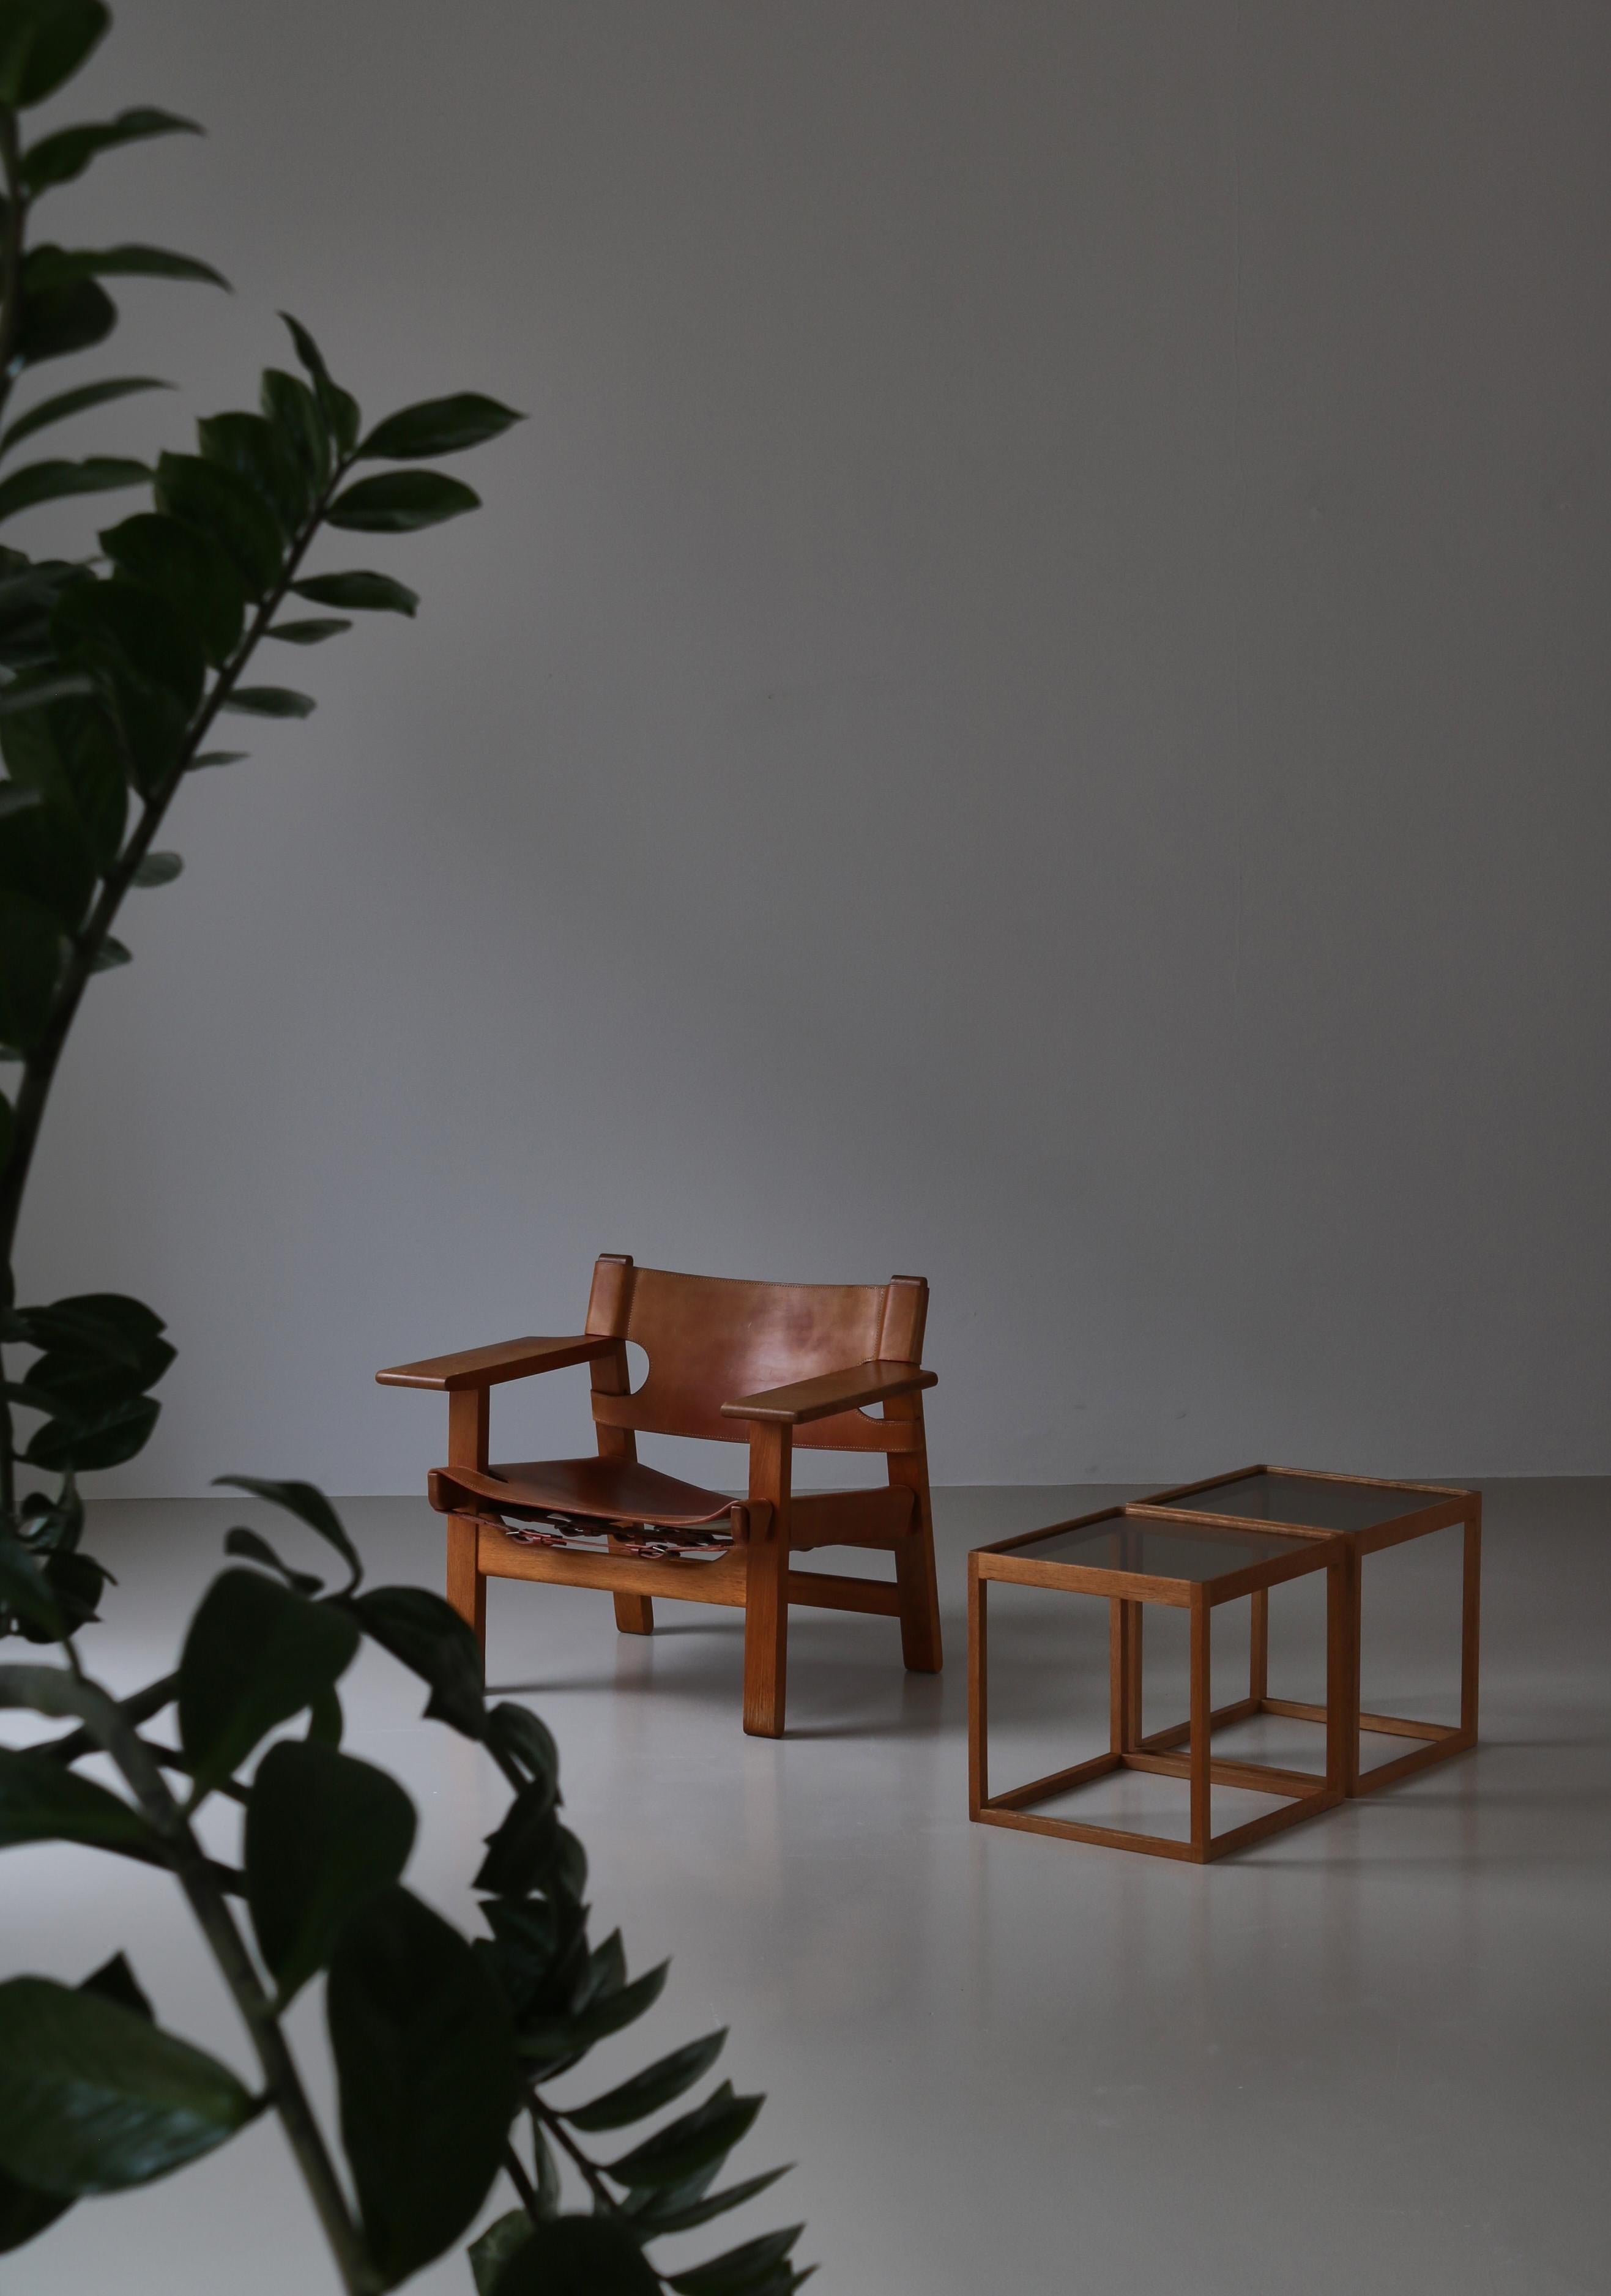 Ensemble de tables d'appoint classiques de la modernité danoise en chêne massif et verre fumé épais. Réalisé dans les années 1960 par Kurt Østervig et fabriqué par 